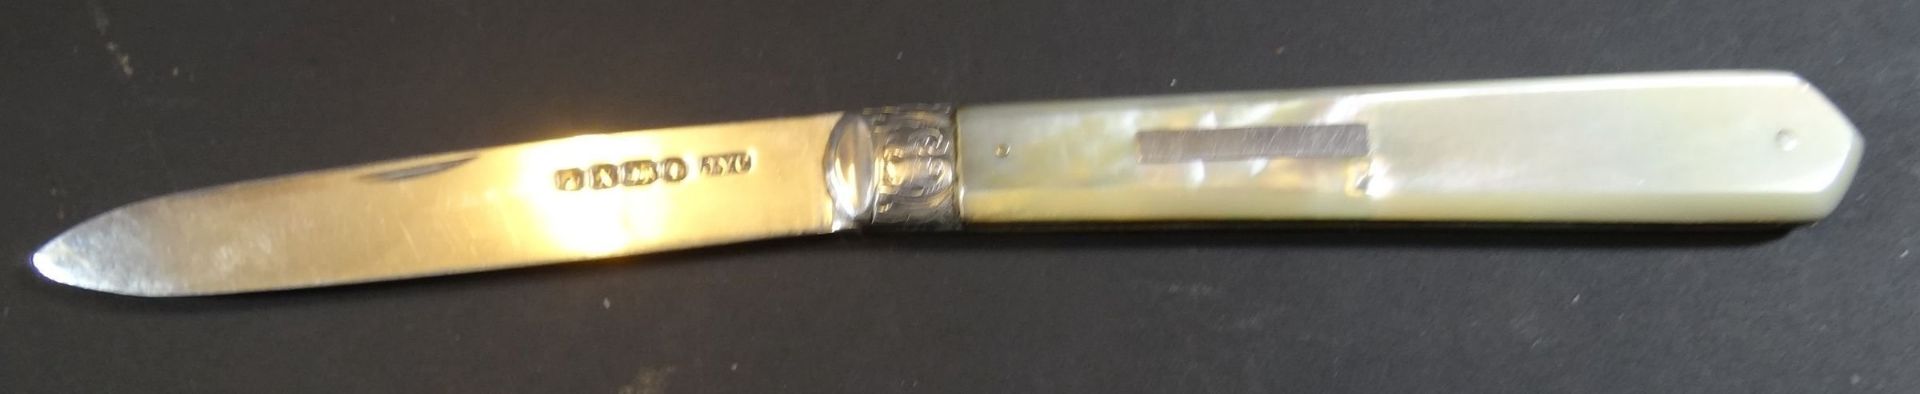 Taschenmesser mit Silberklinge. -925-, England, Queen Victoria Punze, L-max. 15 cm